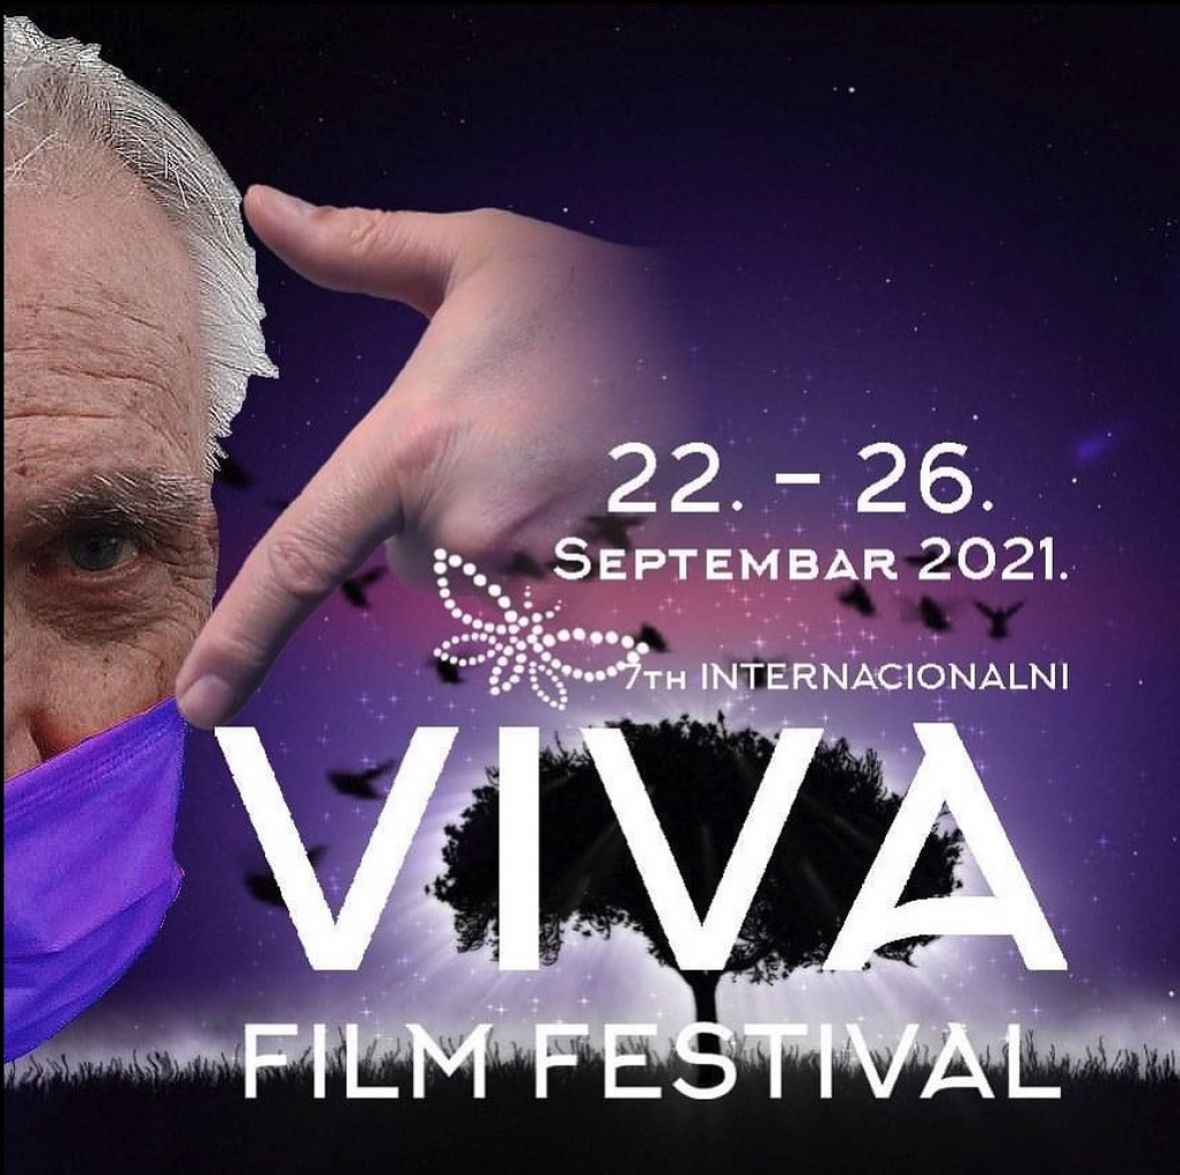 Foto: Viva film/Festival u 20 bh. gradova